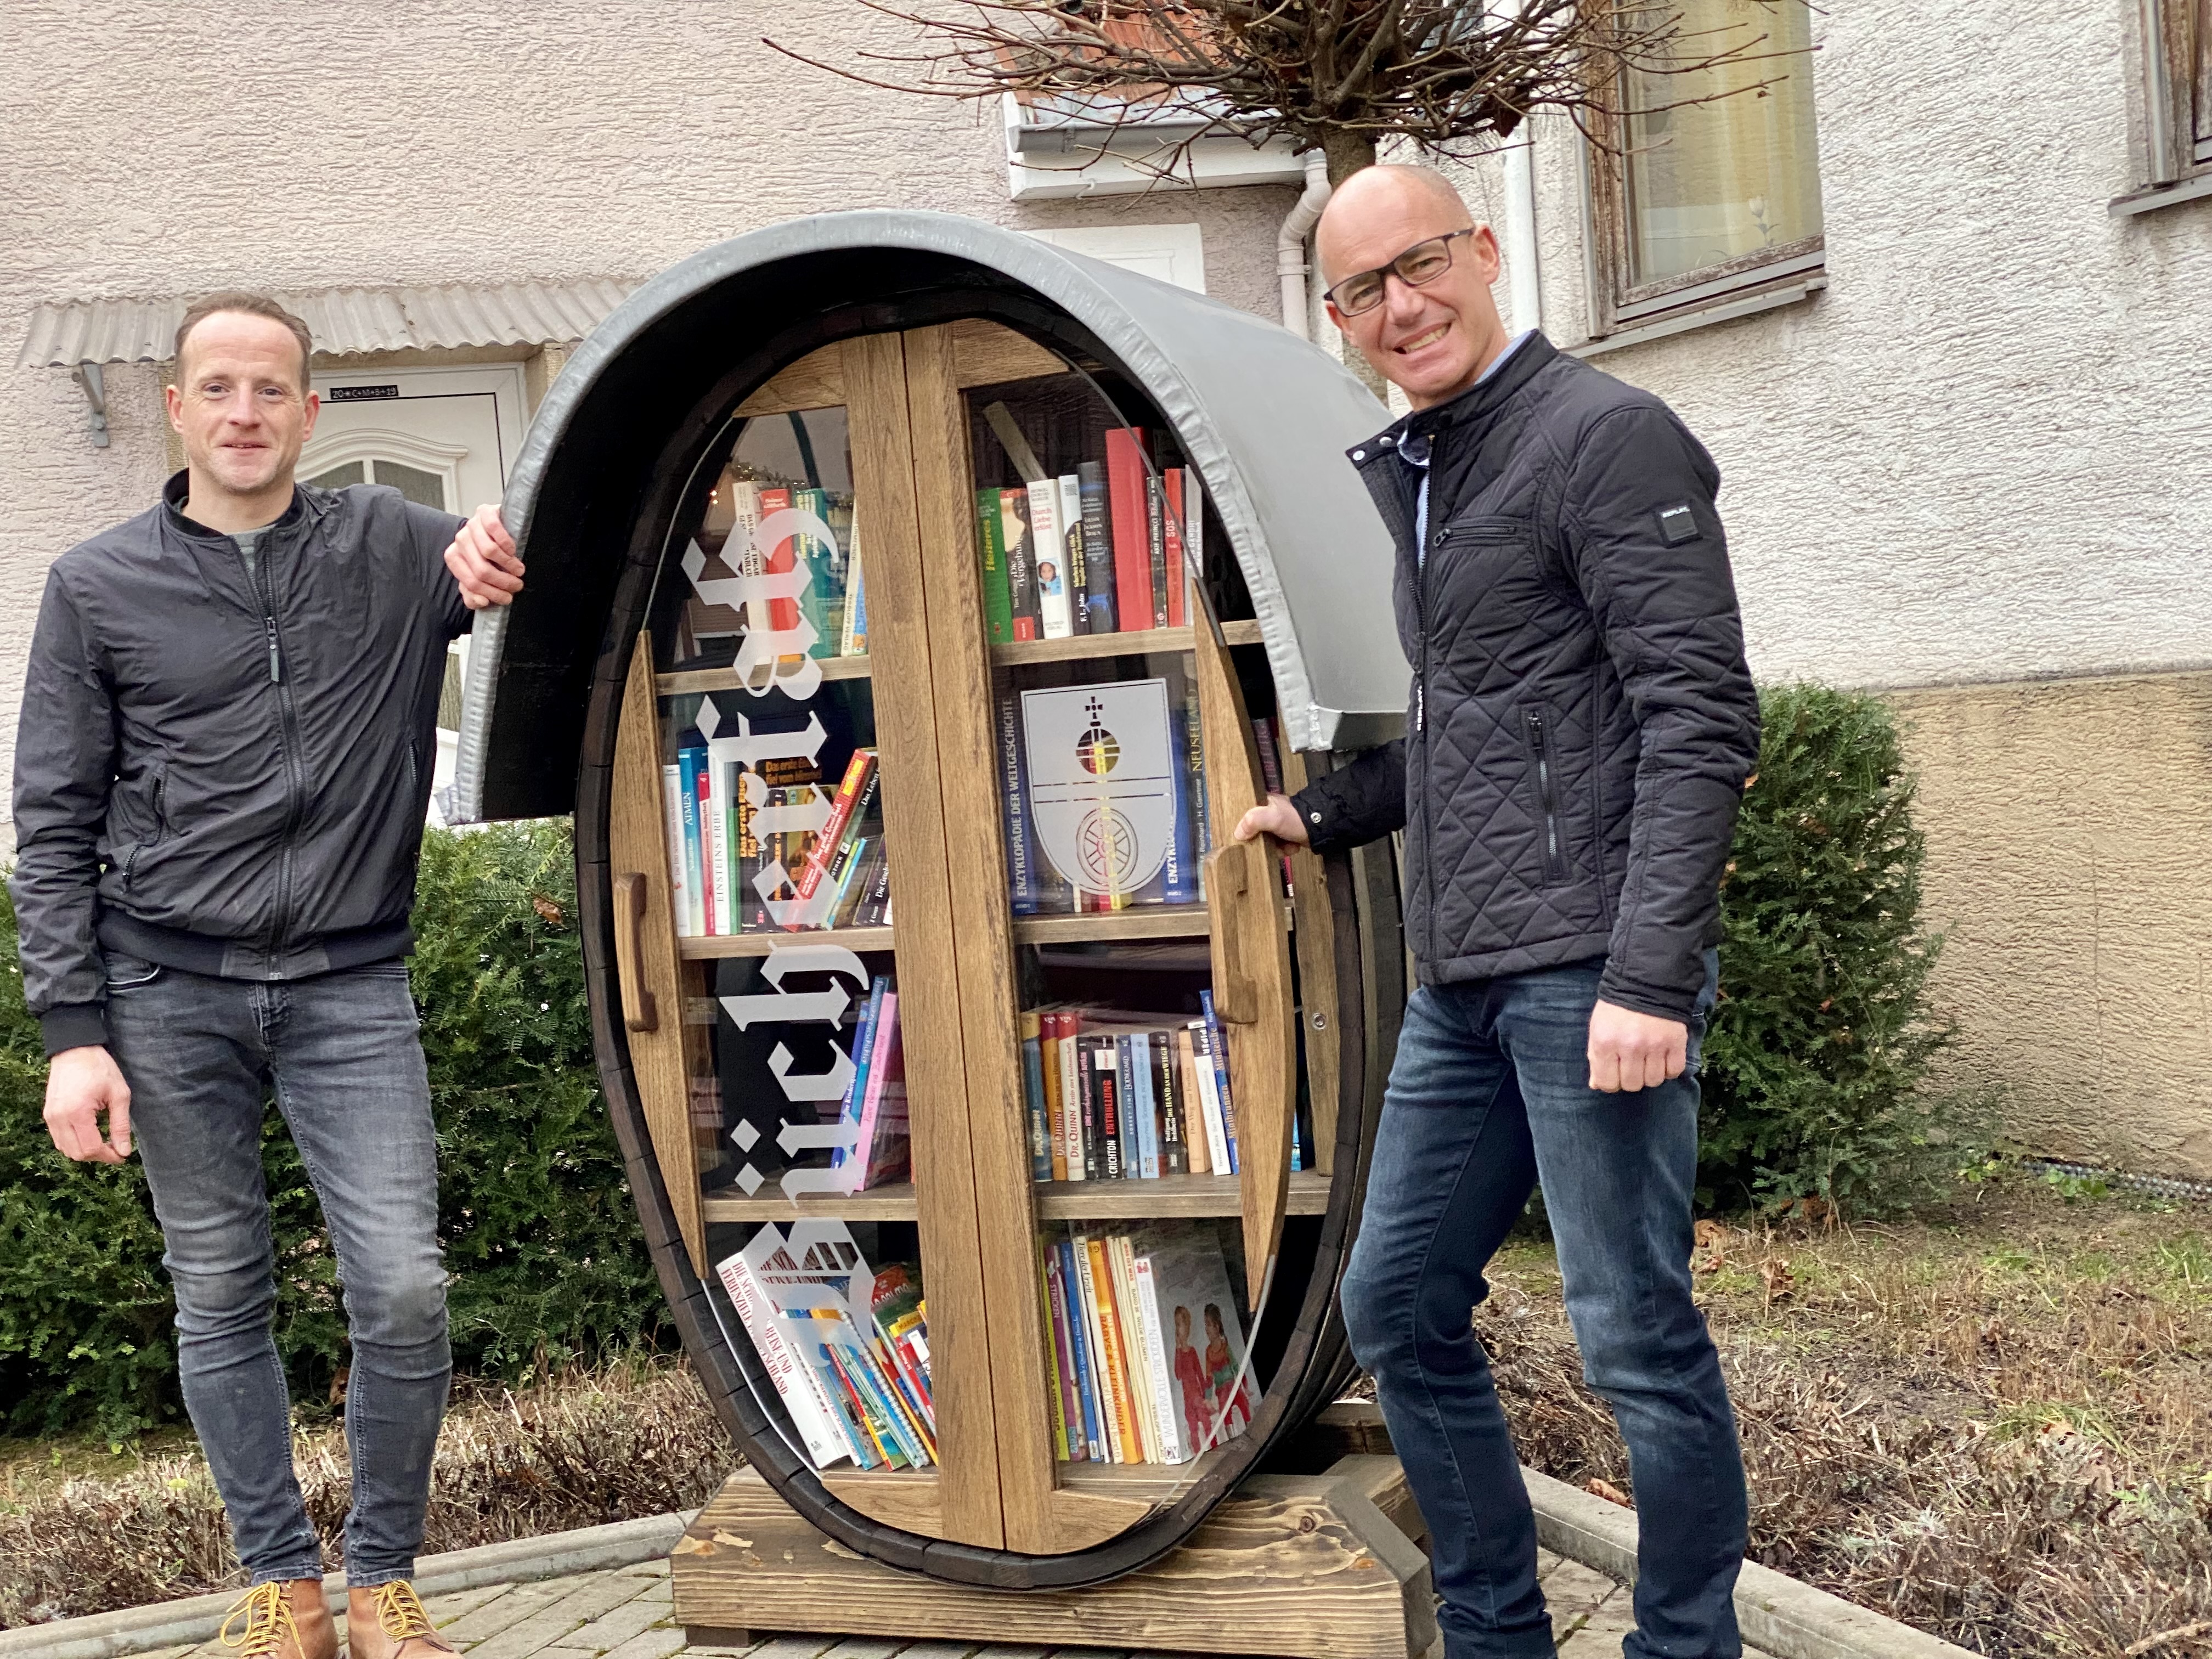 Dieses Bücherfass in Nackenheim als Miniatur-Bibliothek zeigt eine kreative Fusion von Literatur und Wein. Beigeordneter Jan Heckelsmüller (links) und Ortsbürgermeister René Adler (rechts) sind Gründungsmitglieder der Initiative „Wir für Nackenheim“, die das Projekt realisierte.